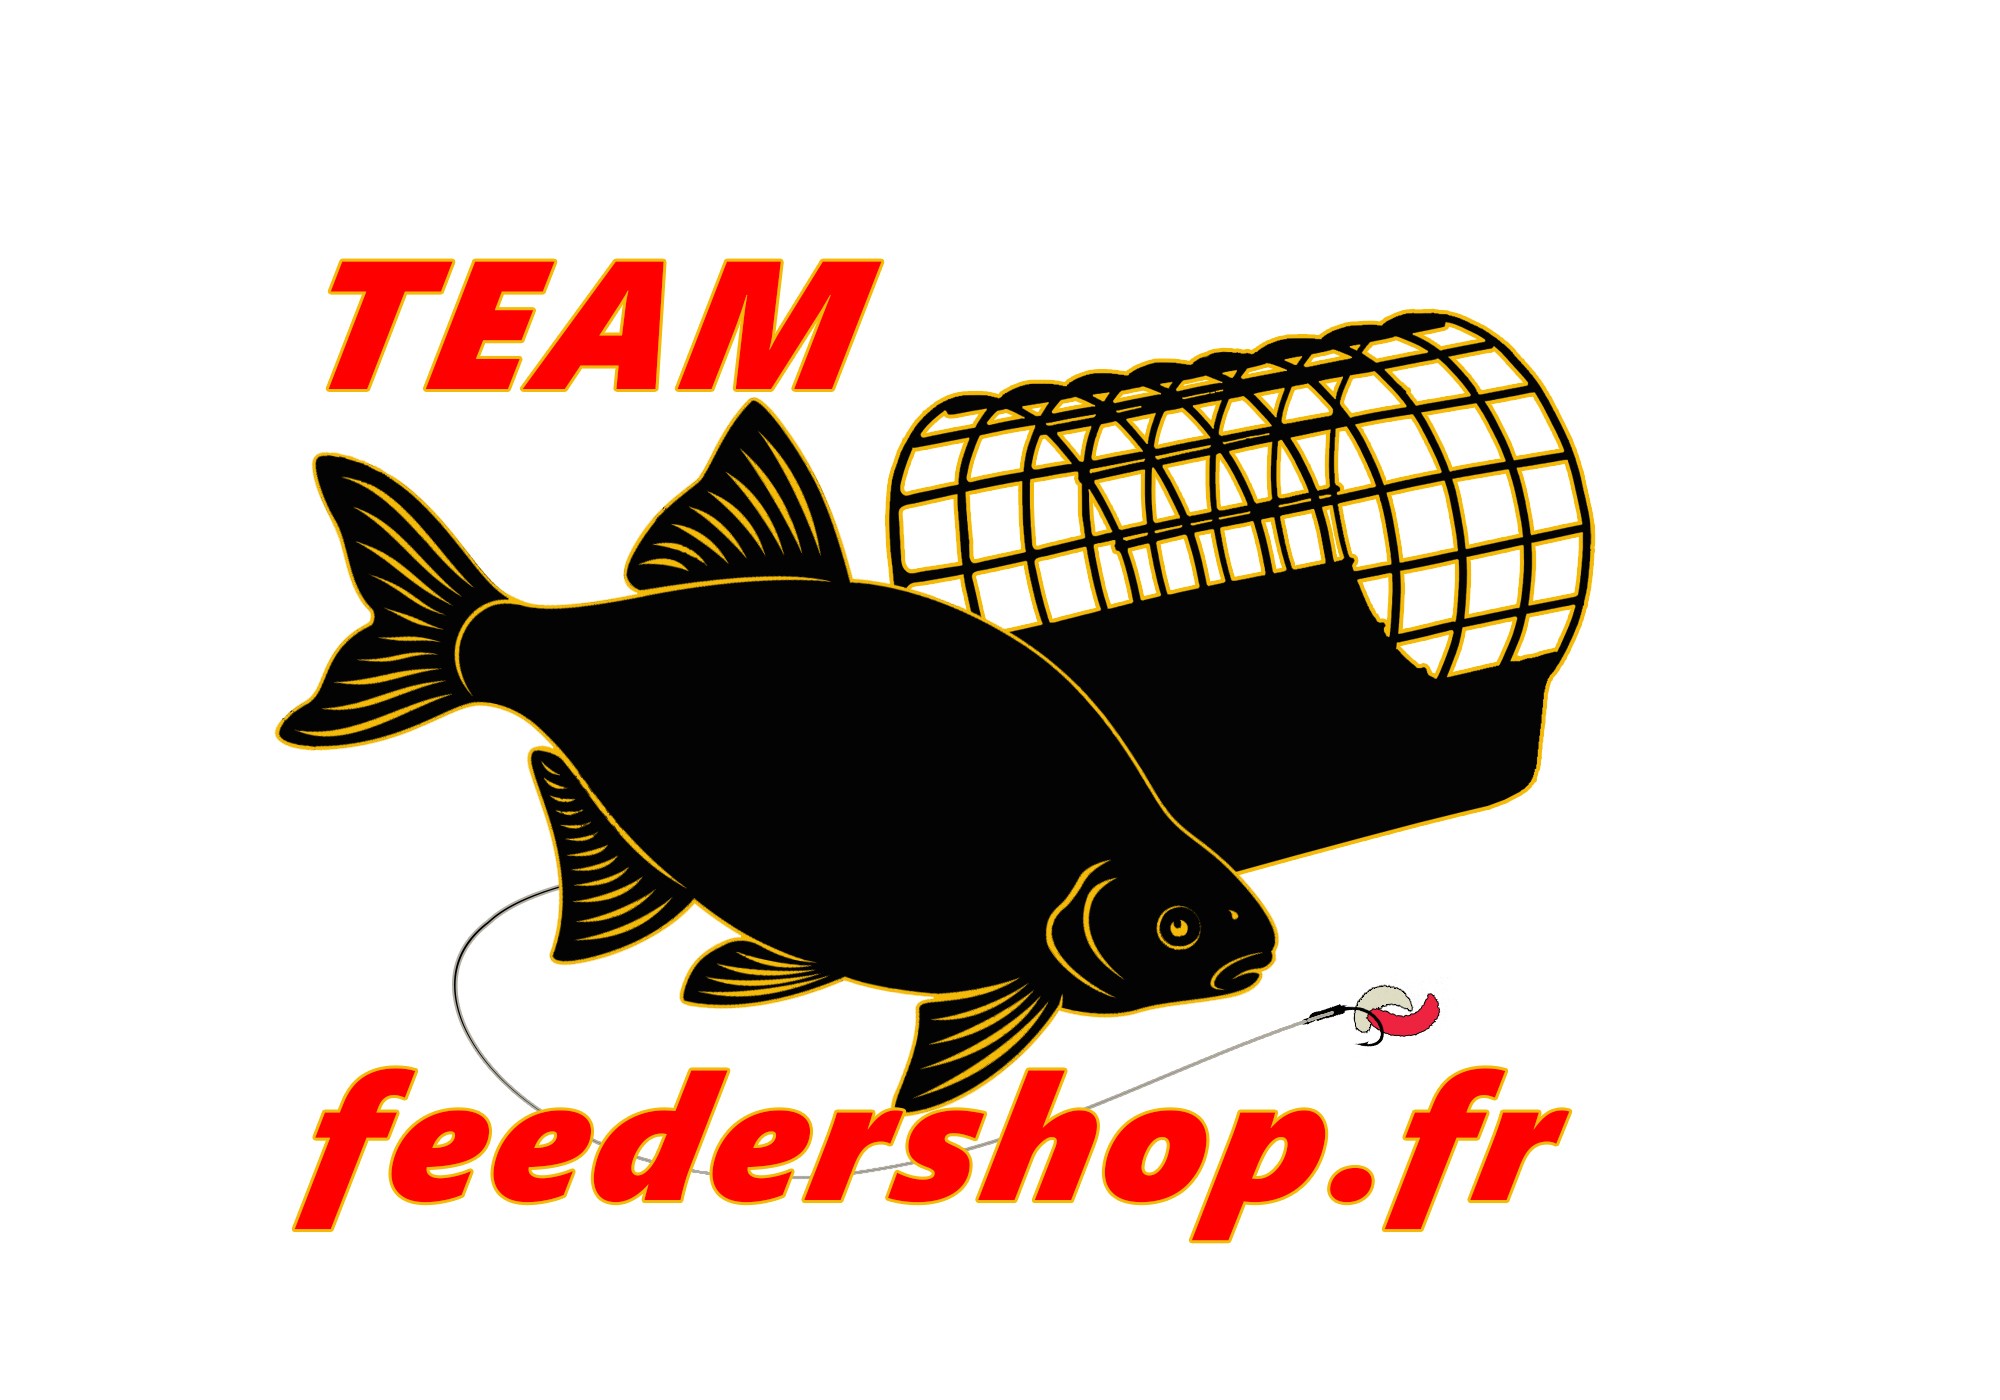 feedershop.fr